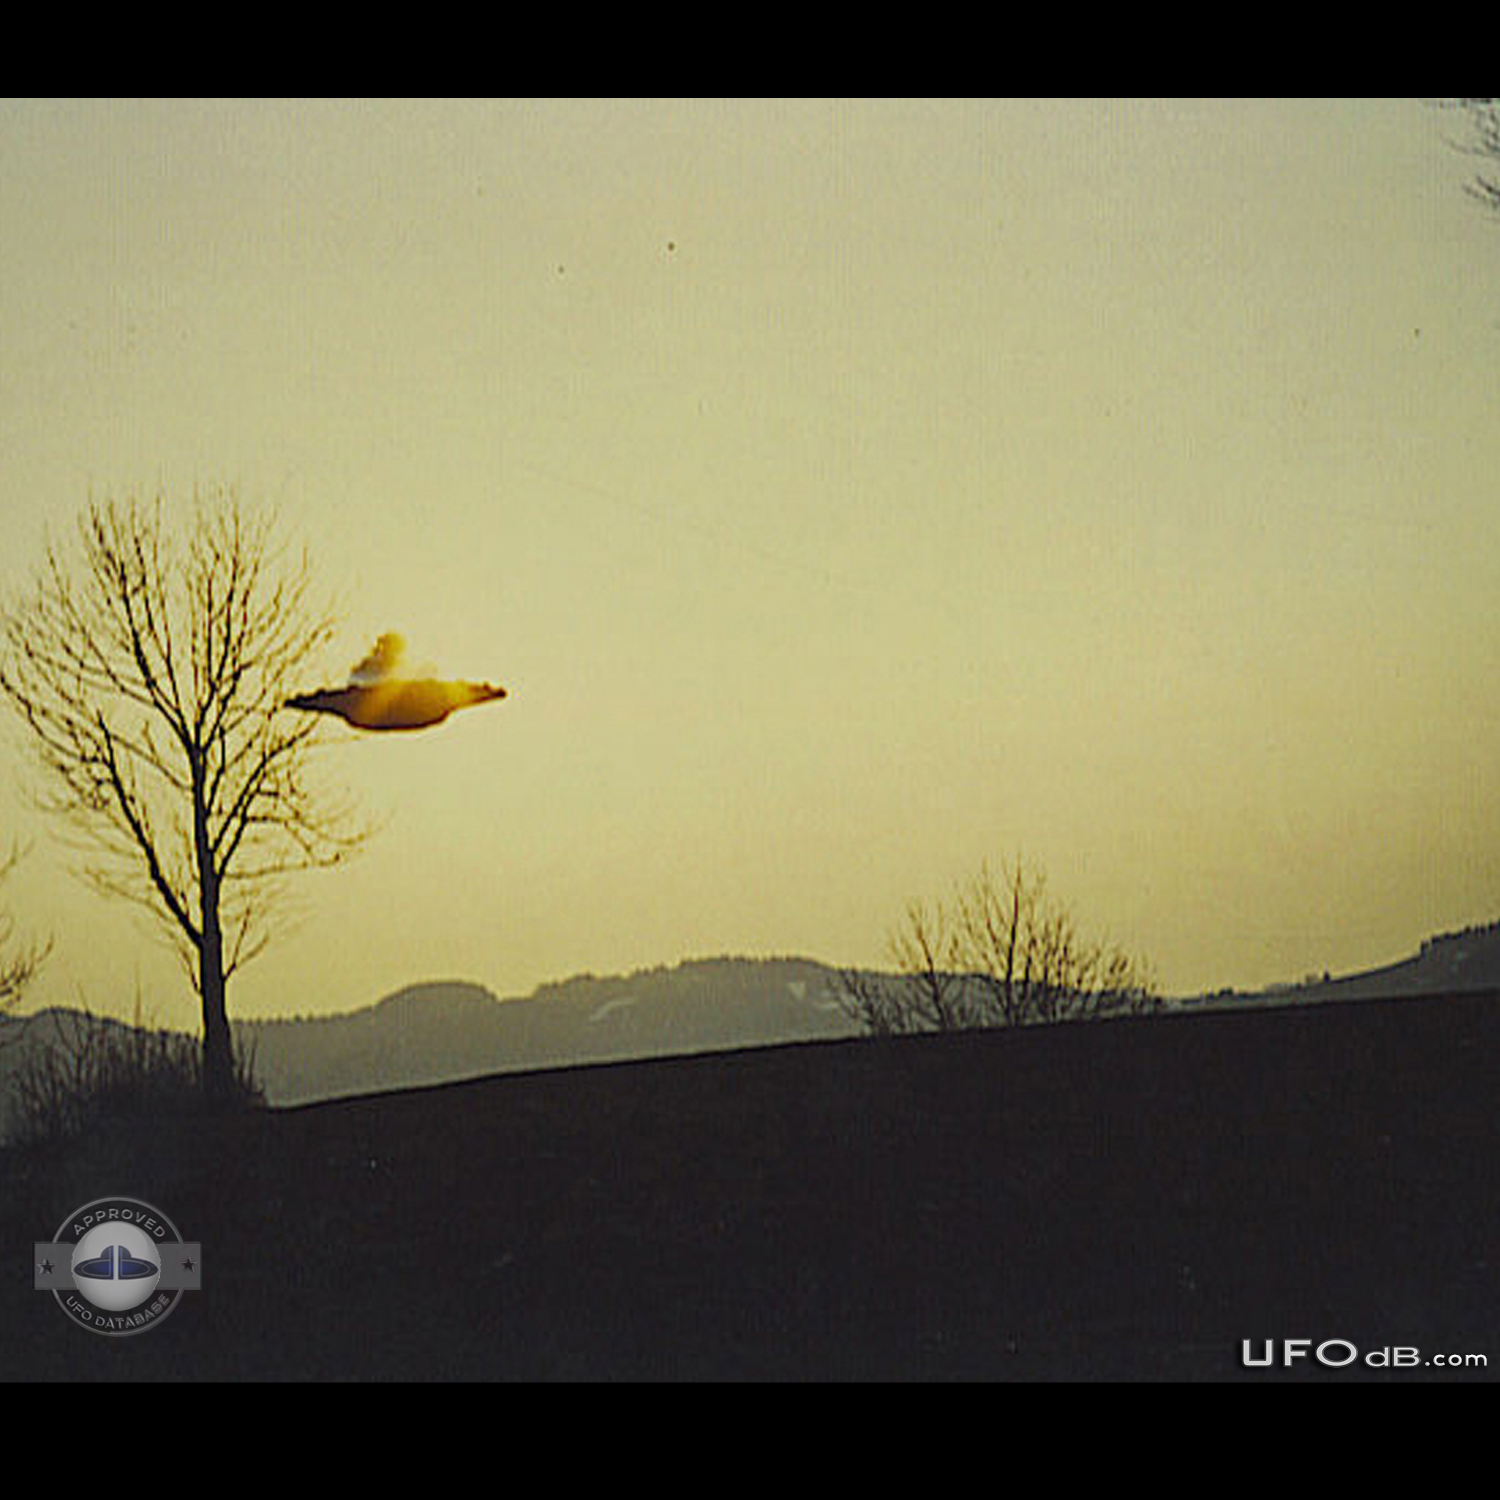 Alien of Pleiadian race driving a UFO | Billy Meier | Switzerland 1976 UFO Picture #256-4